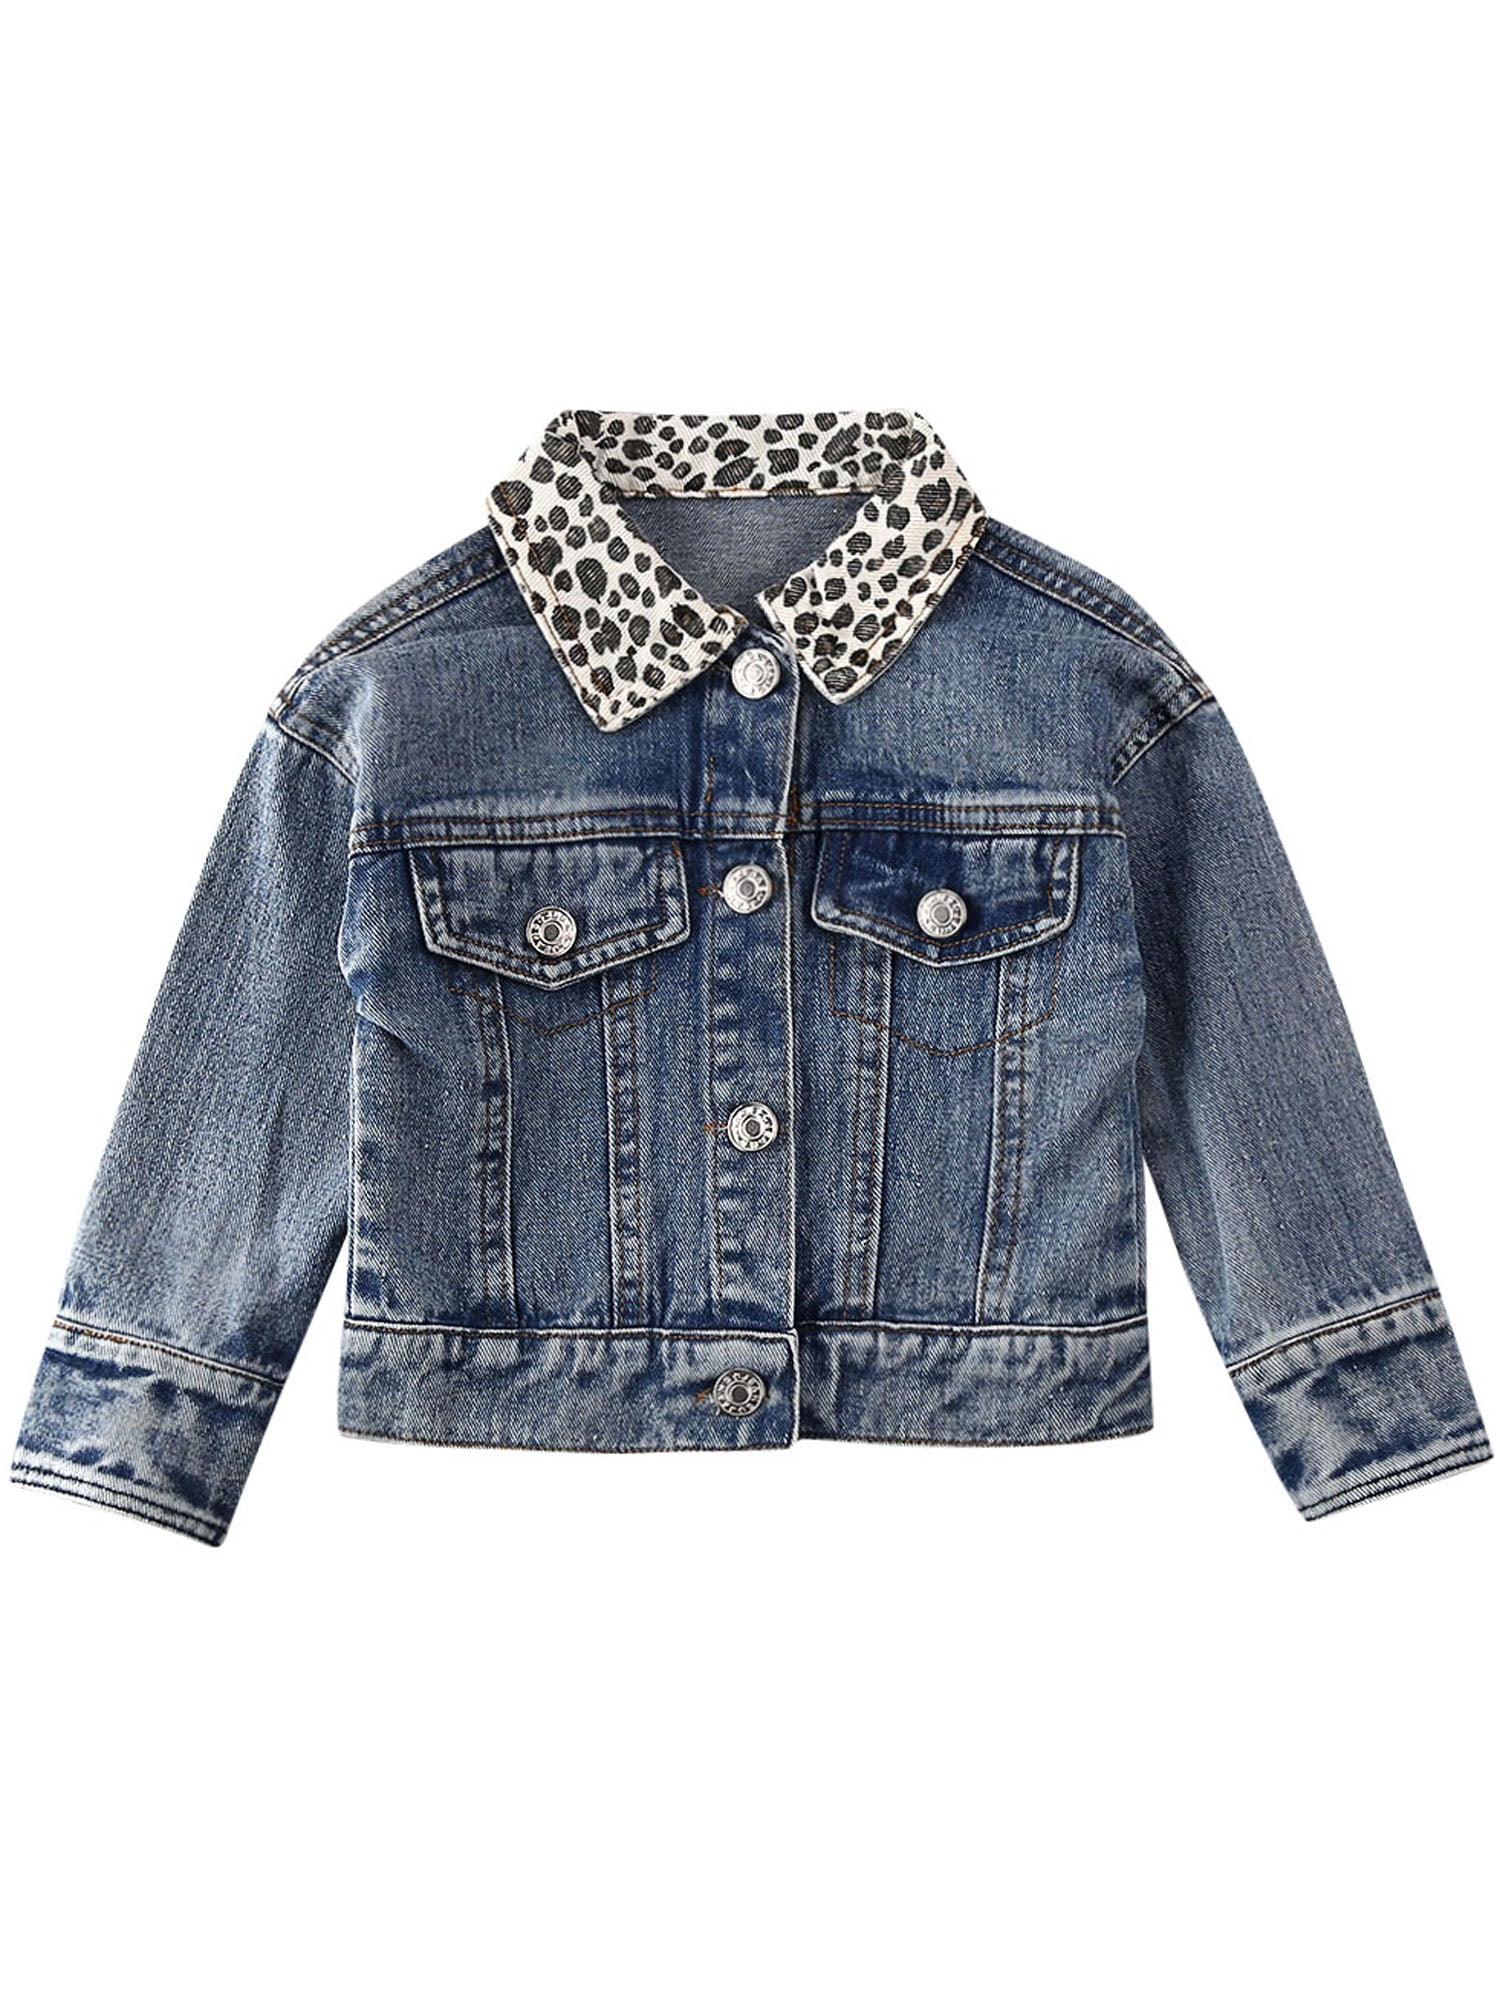 Toddler Baby Girls Denim Jackets Leopard Print Button Down Coats Outwear 